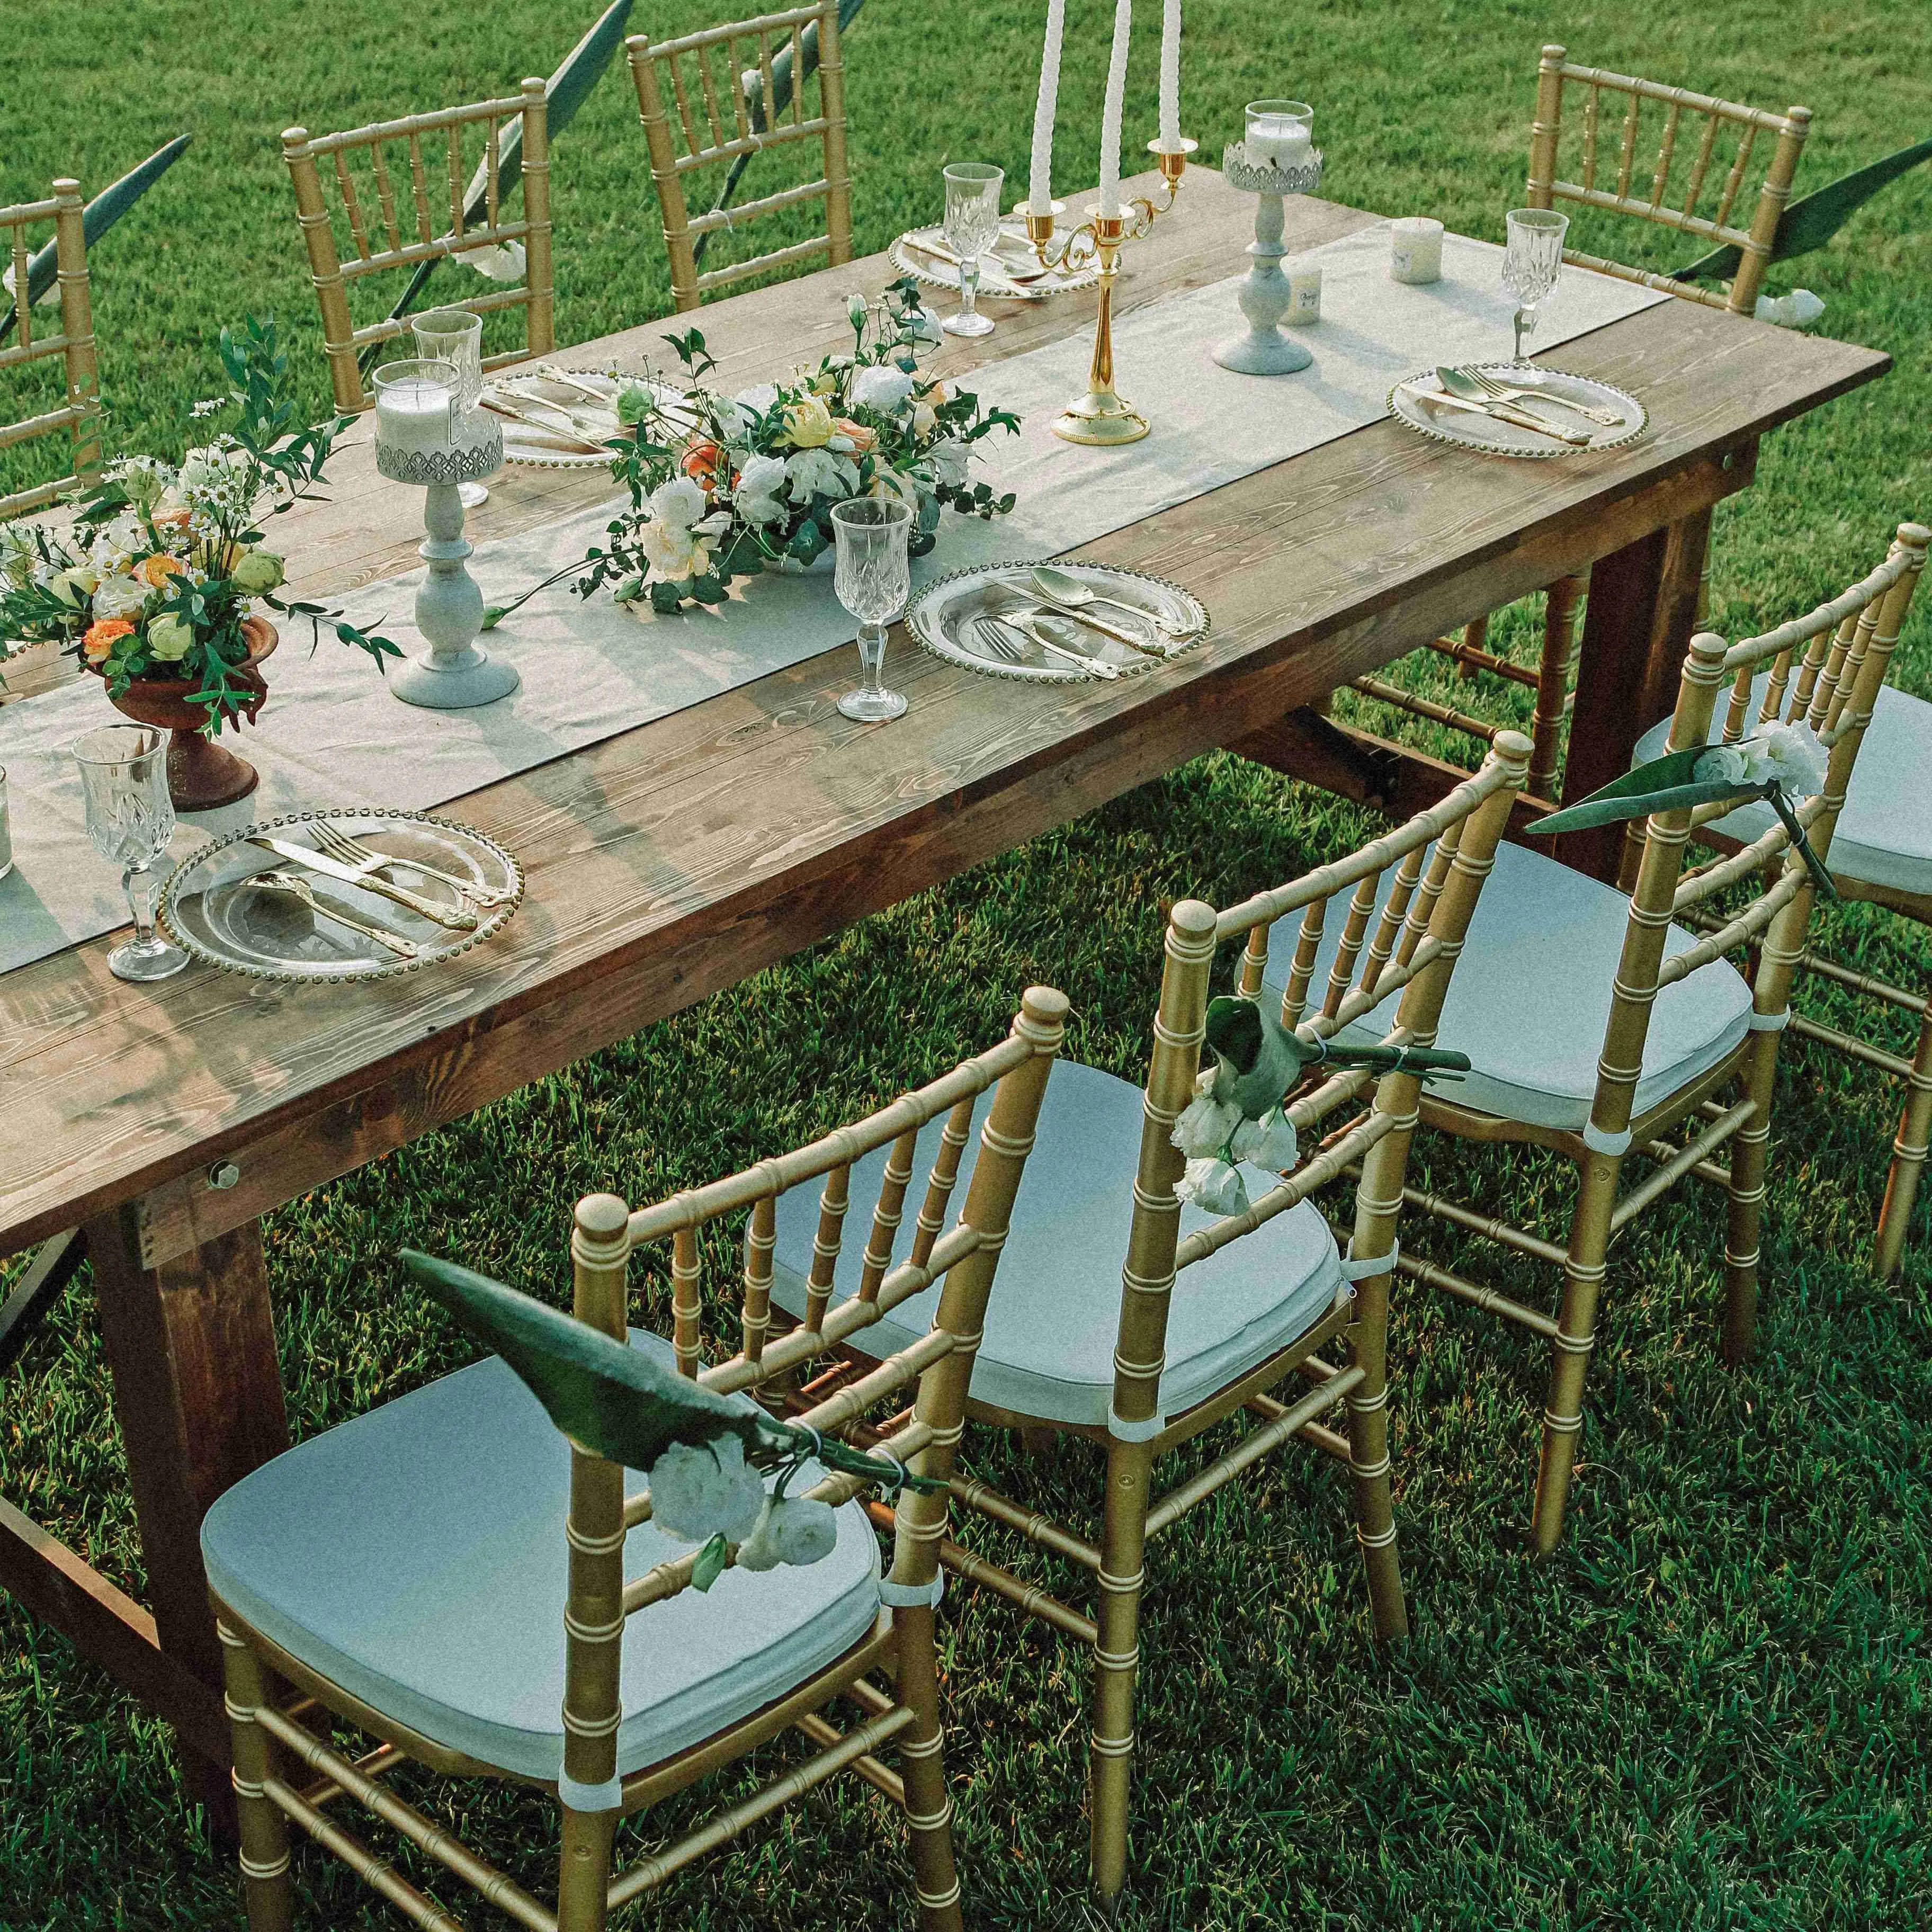 Rental Company Holz Event Sillas Stühle und Tische für Garden Hotel Bankett